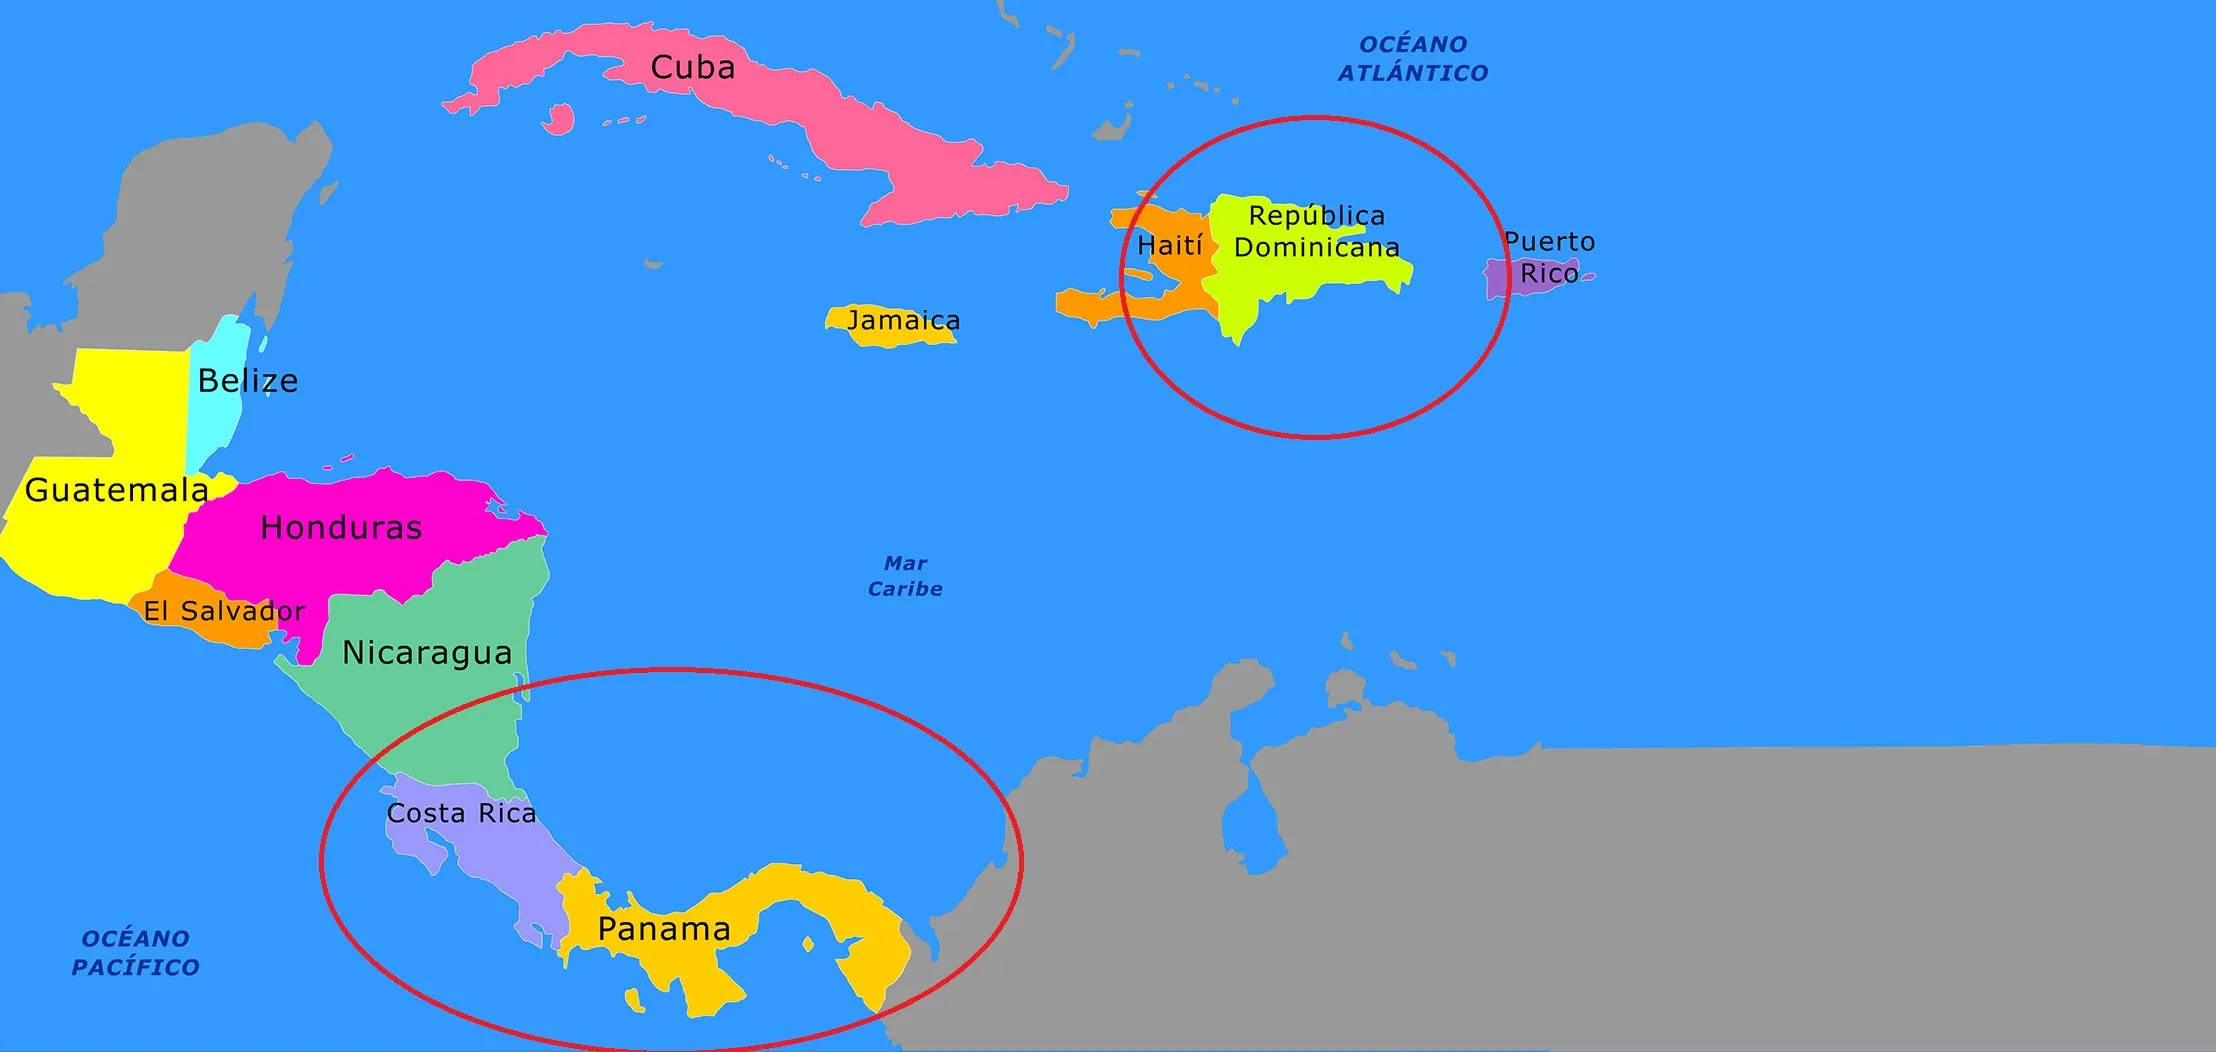 Costa Rica, Panamá y República Dominicana impulsan cooperación trilateral